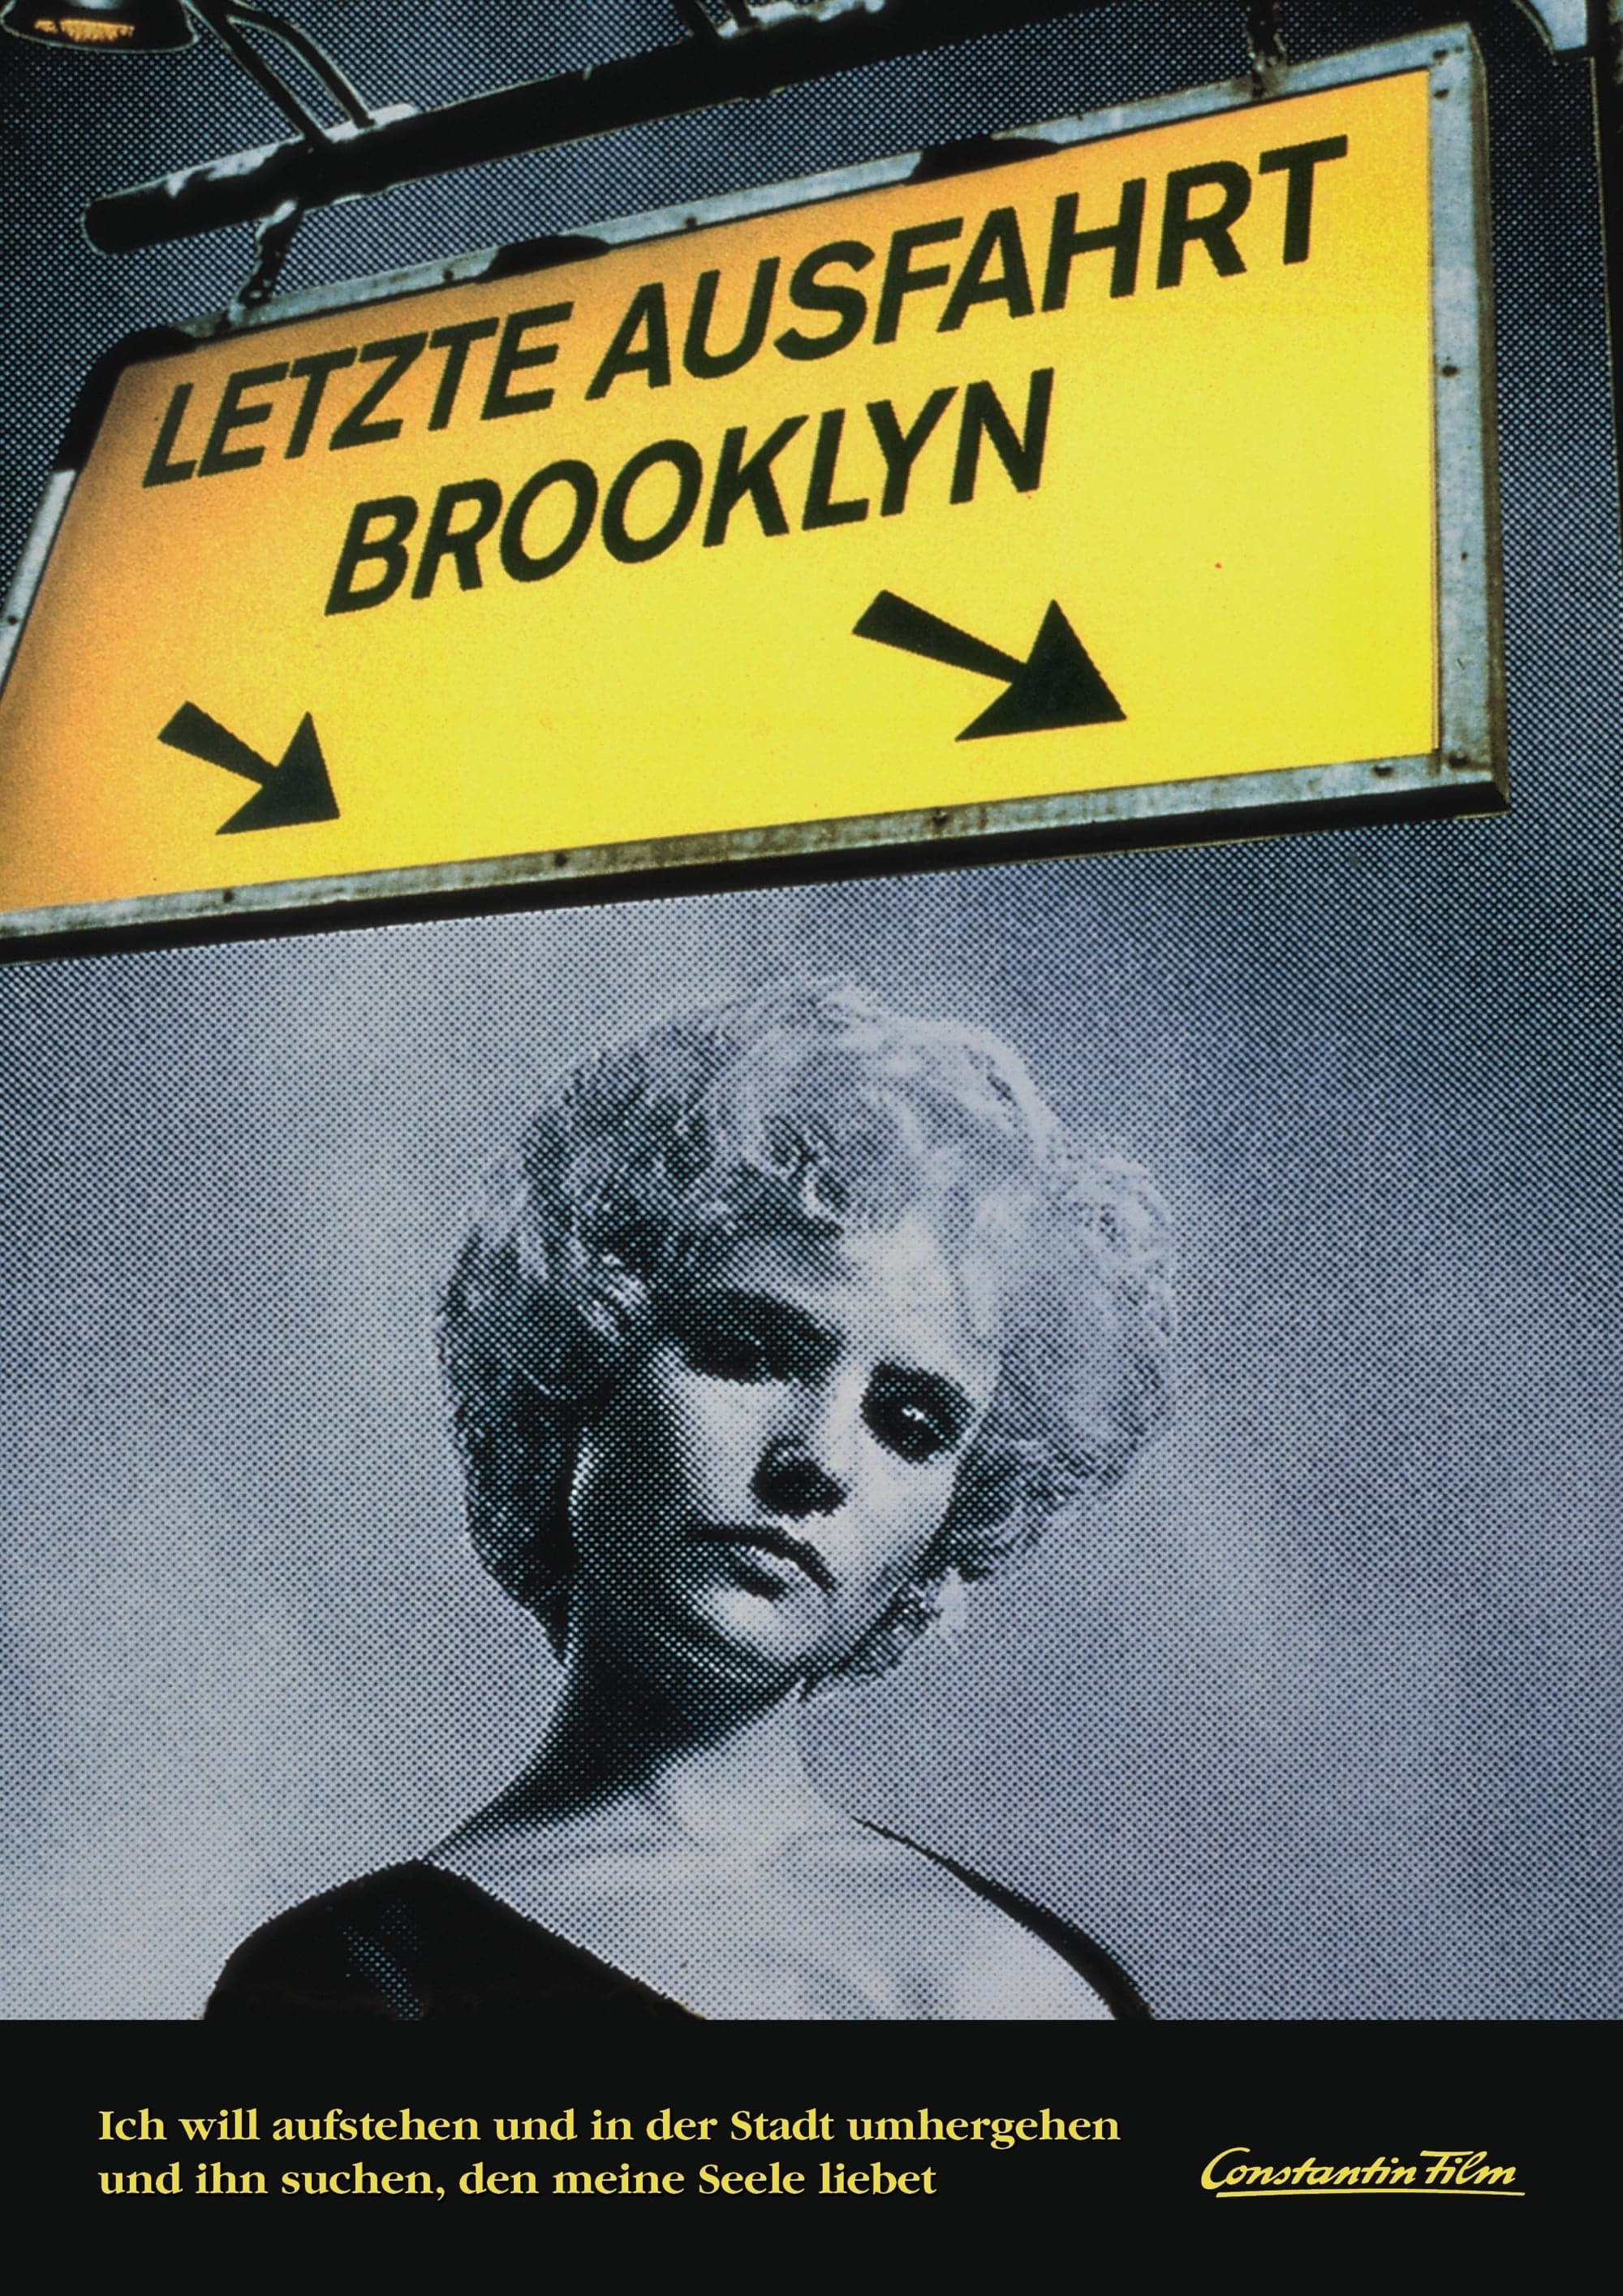 Plakat von "Letzte Ausfahrt Brooklyn"